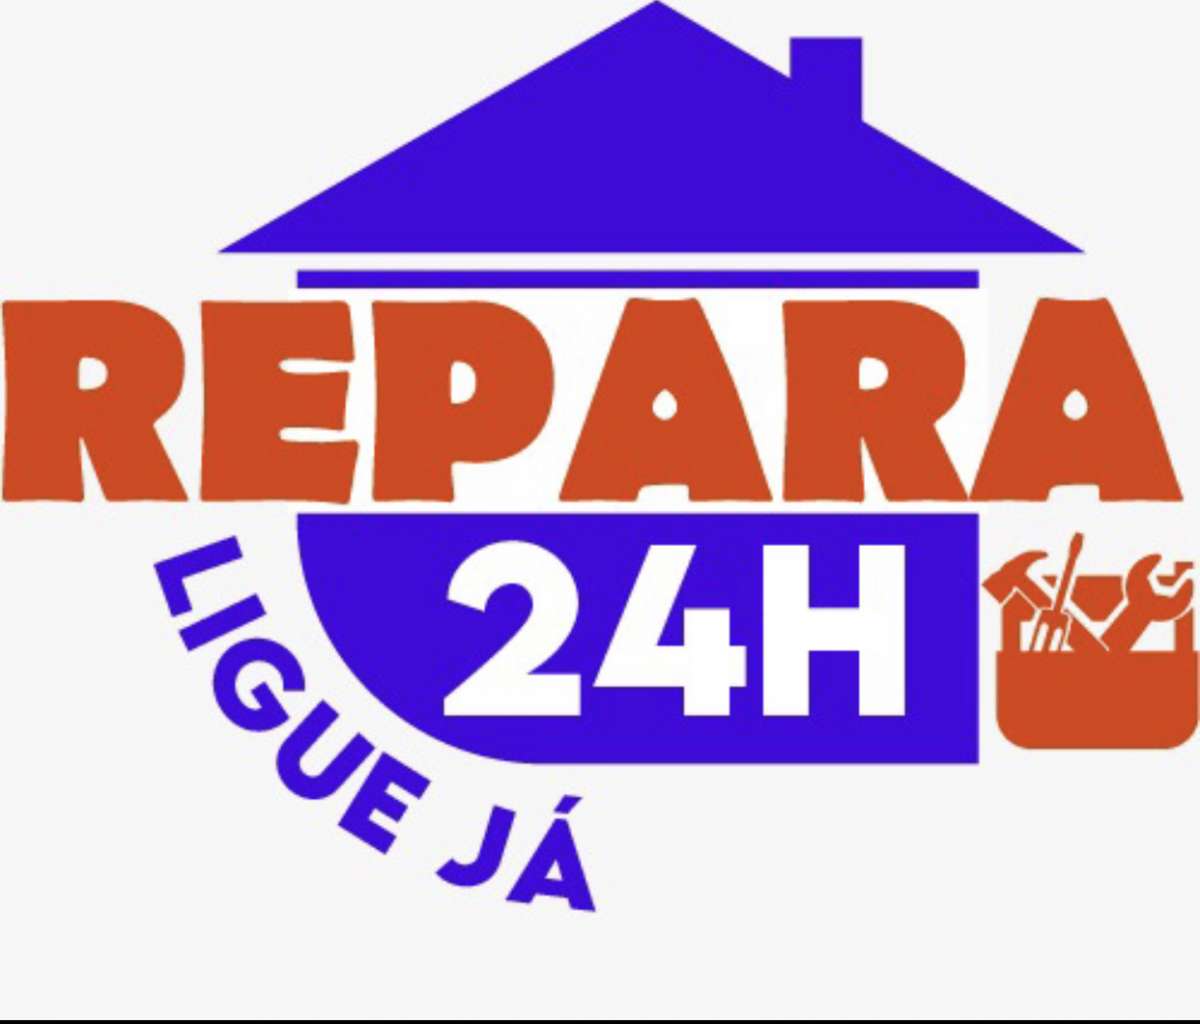 Repara24H - Odivelas - Reparação de Cortador de Relva